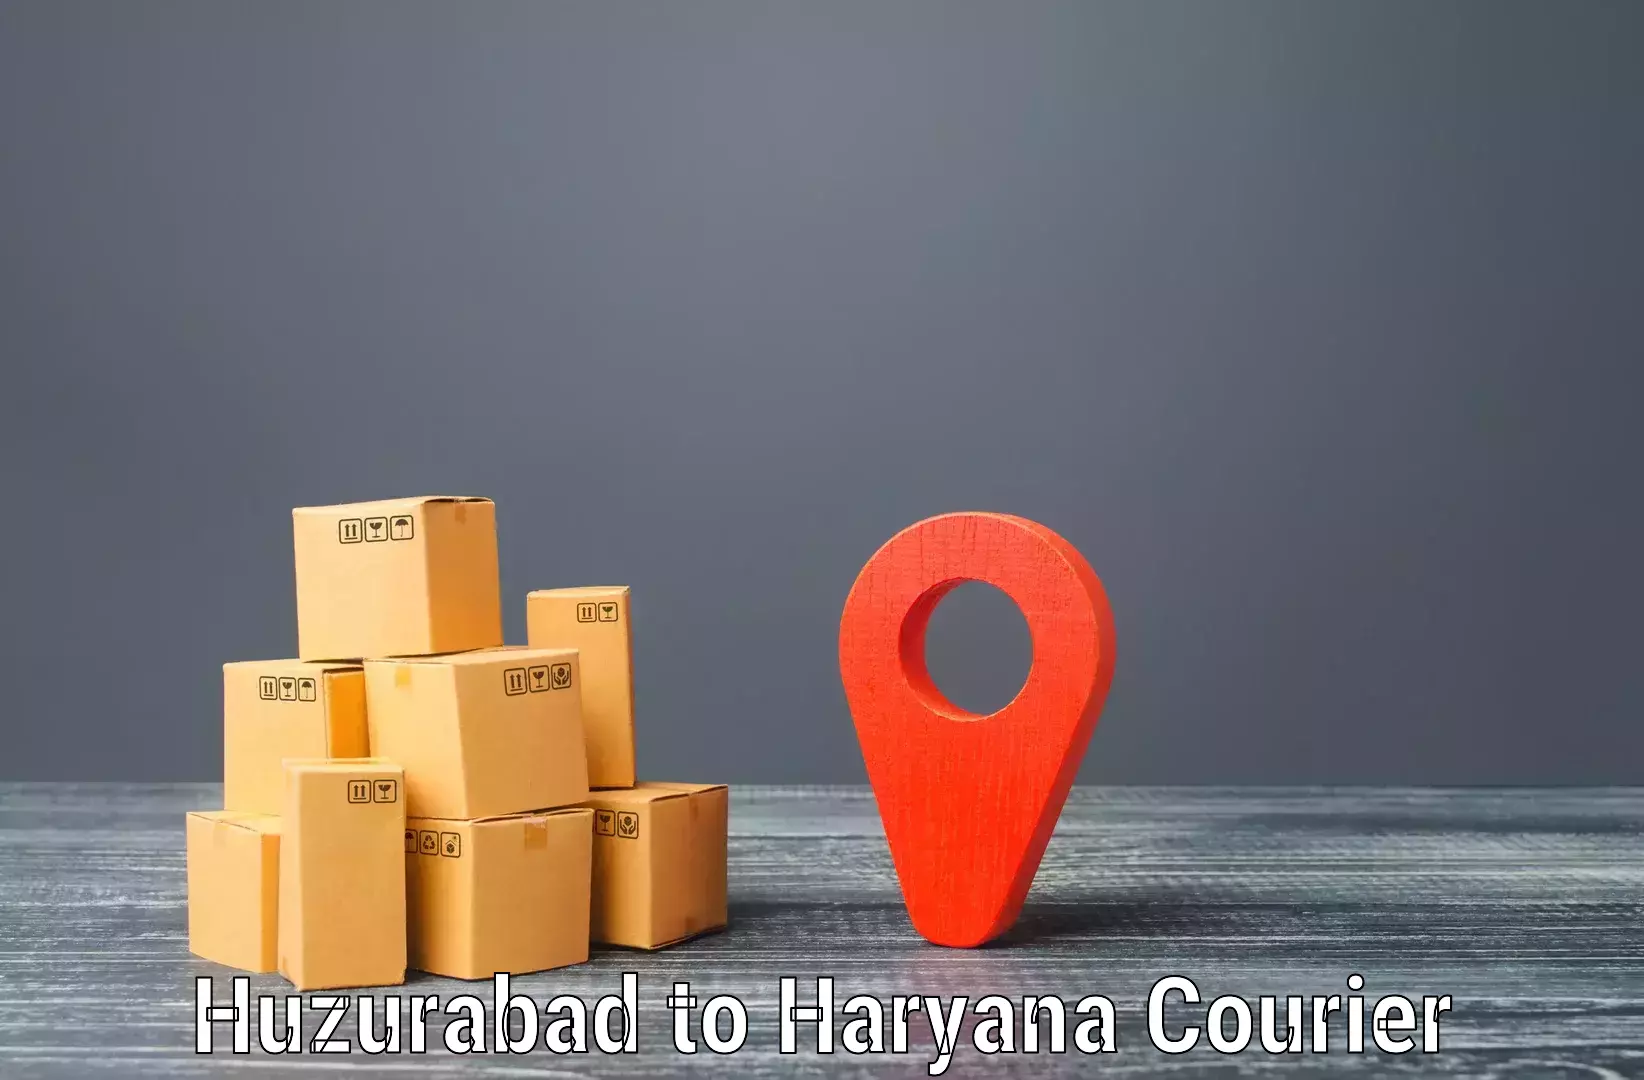 Premium courier services Huzurabad to Gurgaon